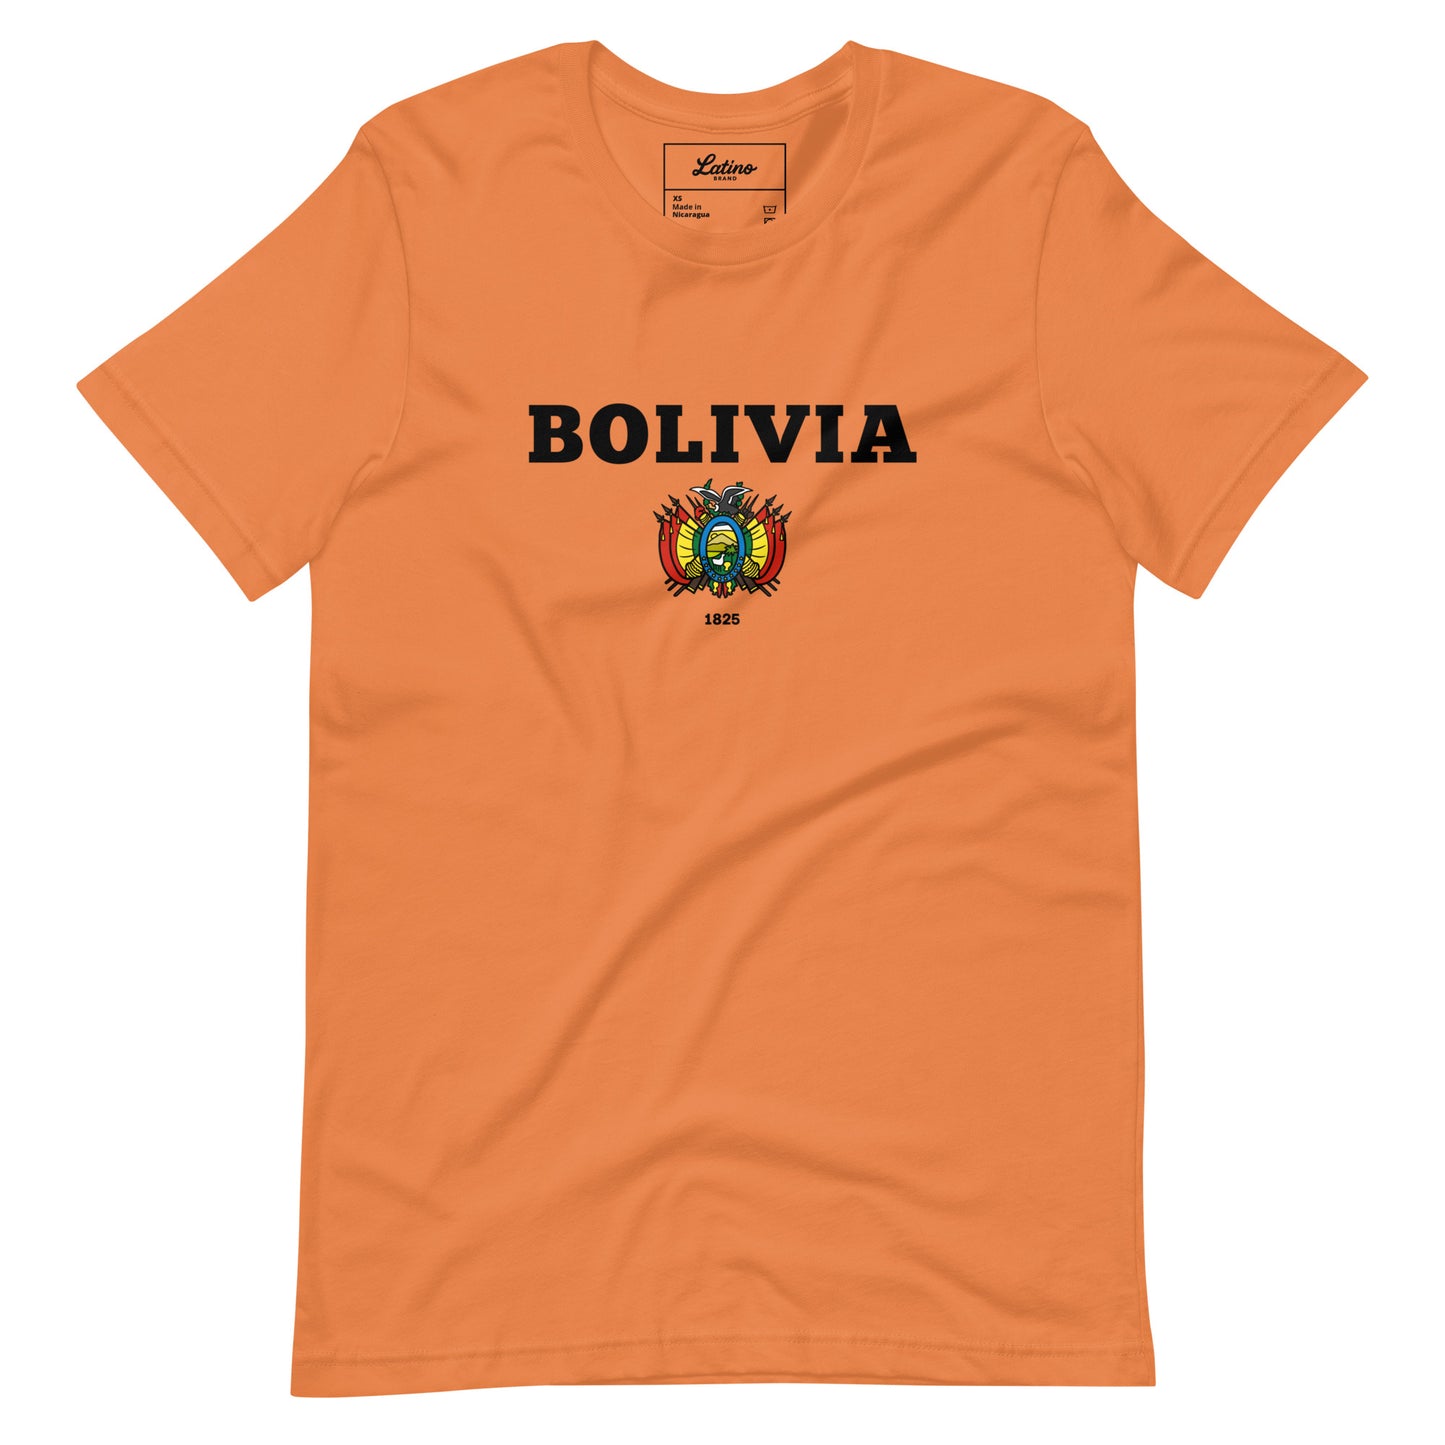 🇧🇴 Bolivia 1825